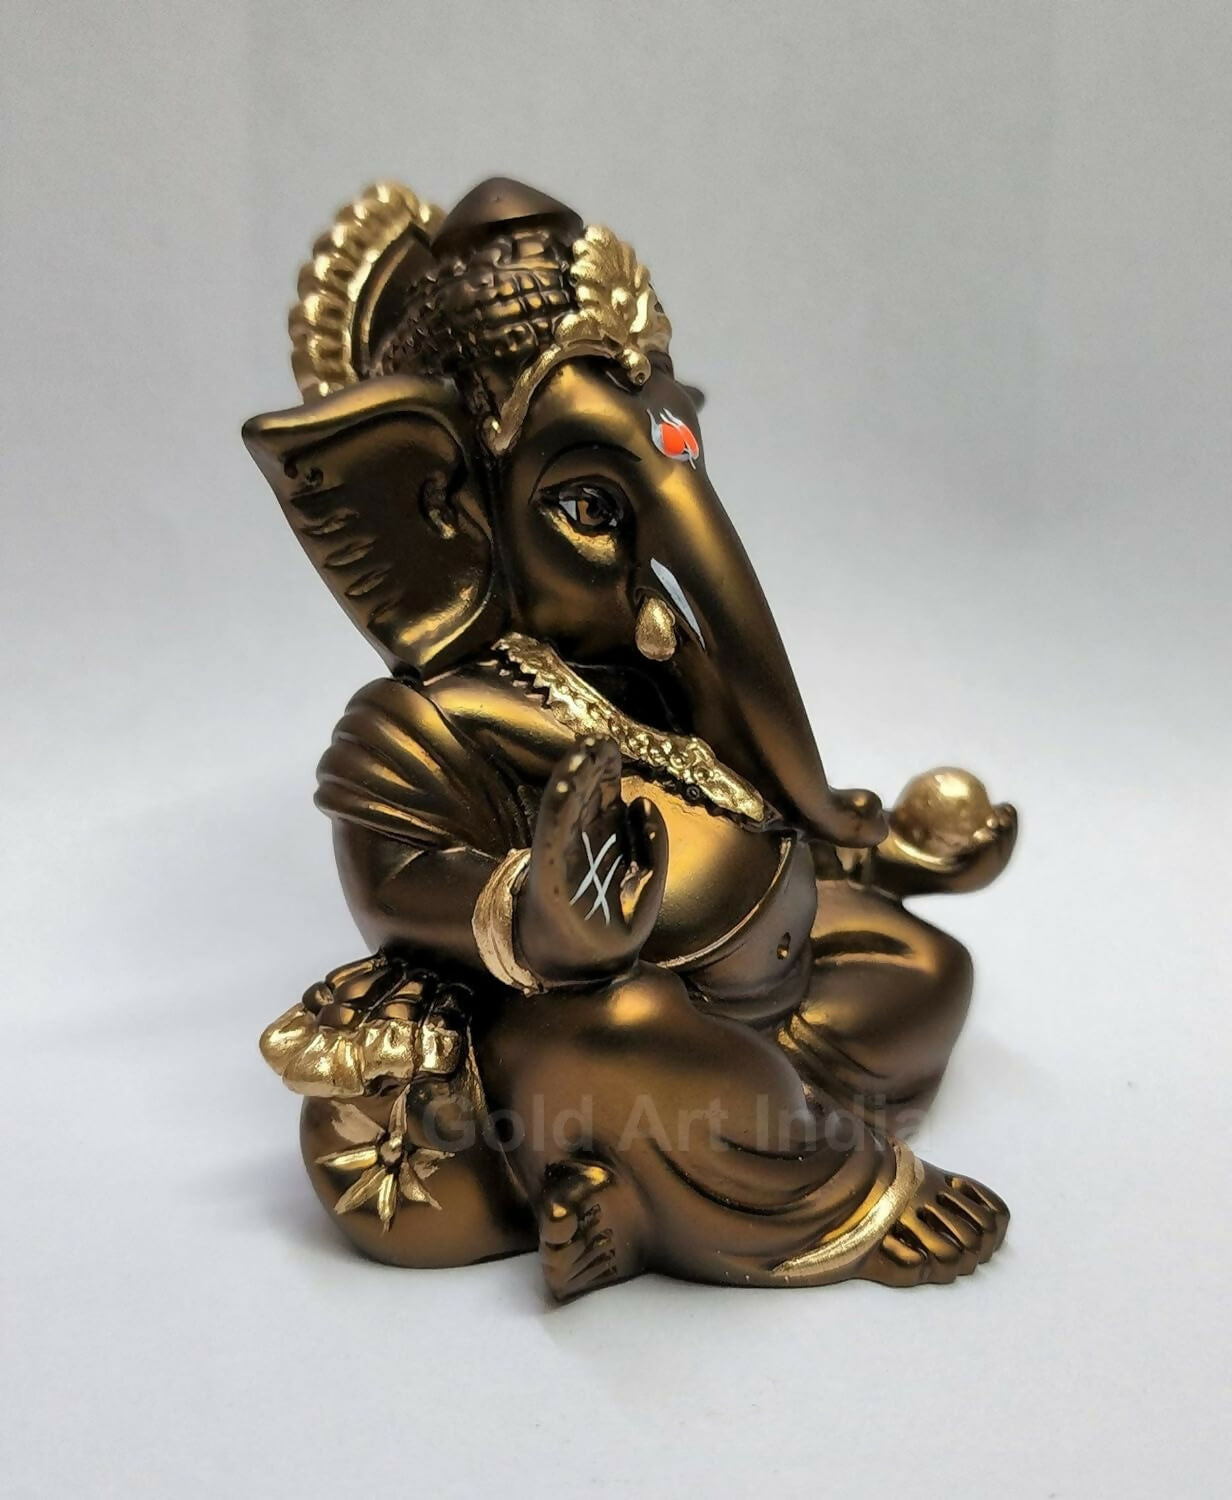 Gold Art India Gaddi Ganesh Idol For Car Dashboard - Distacart